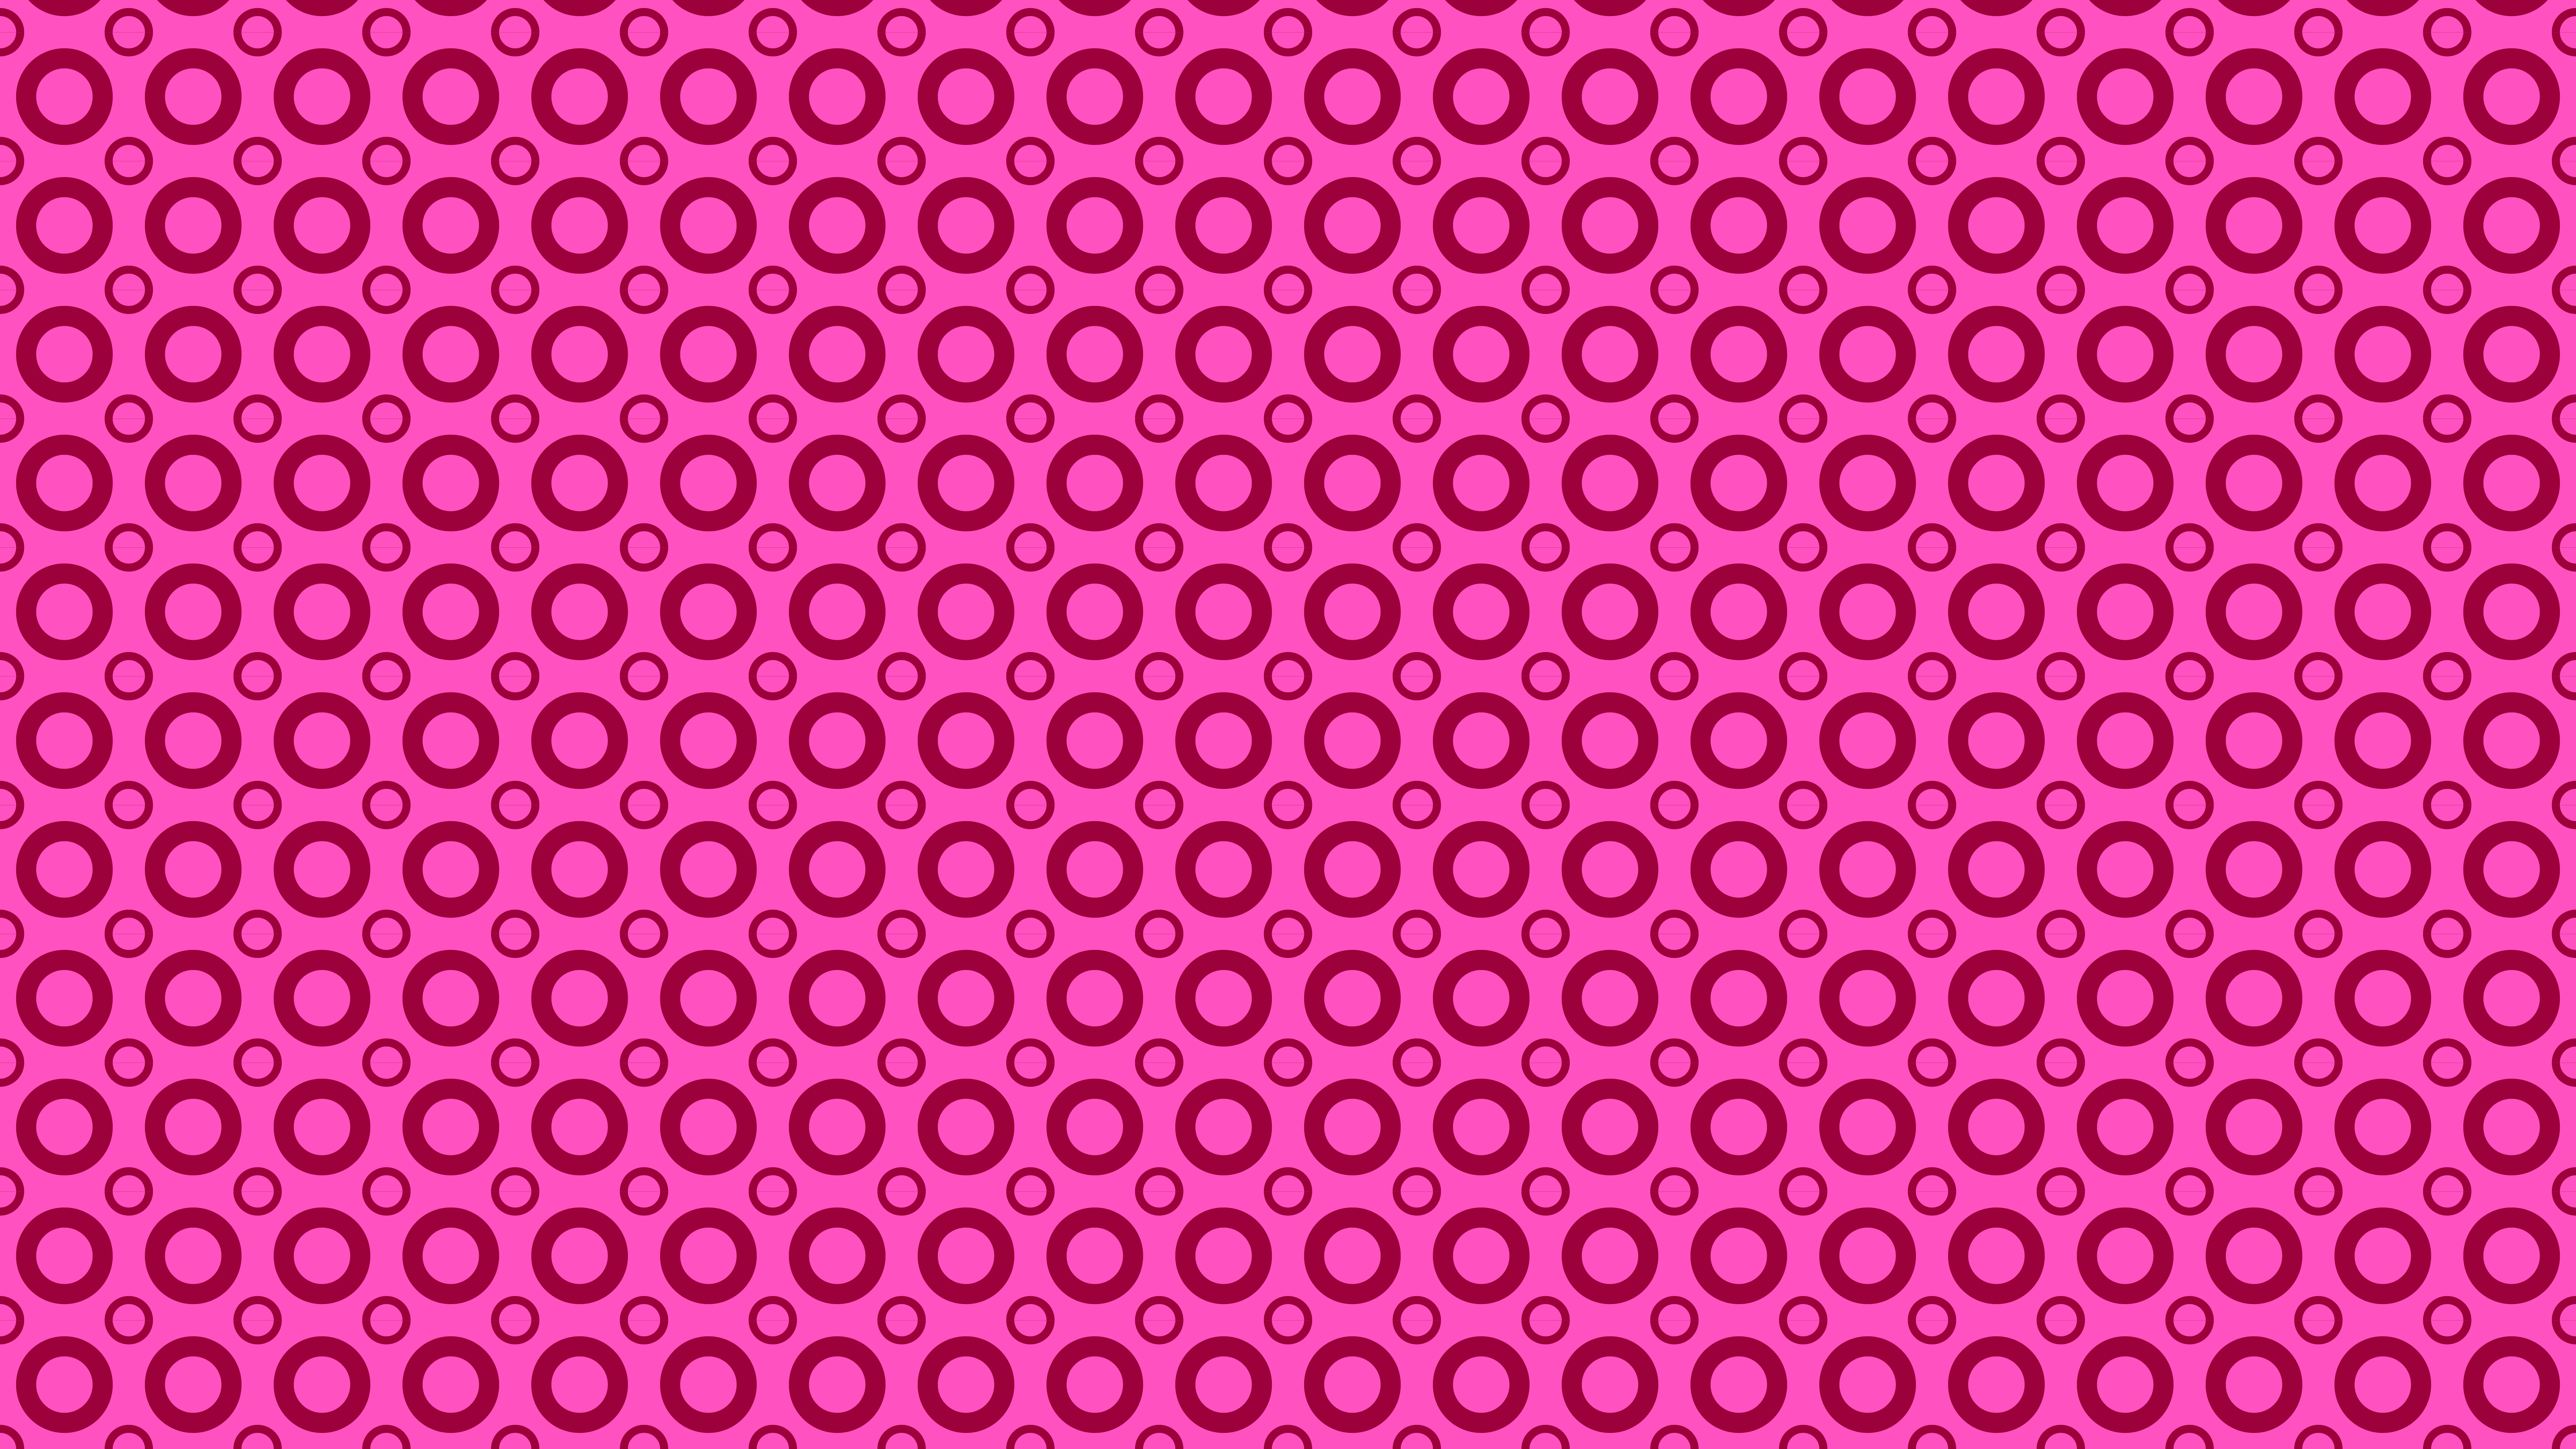 Free Rose Pink Circle Background Pattern Illustrator